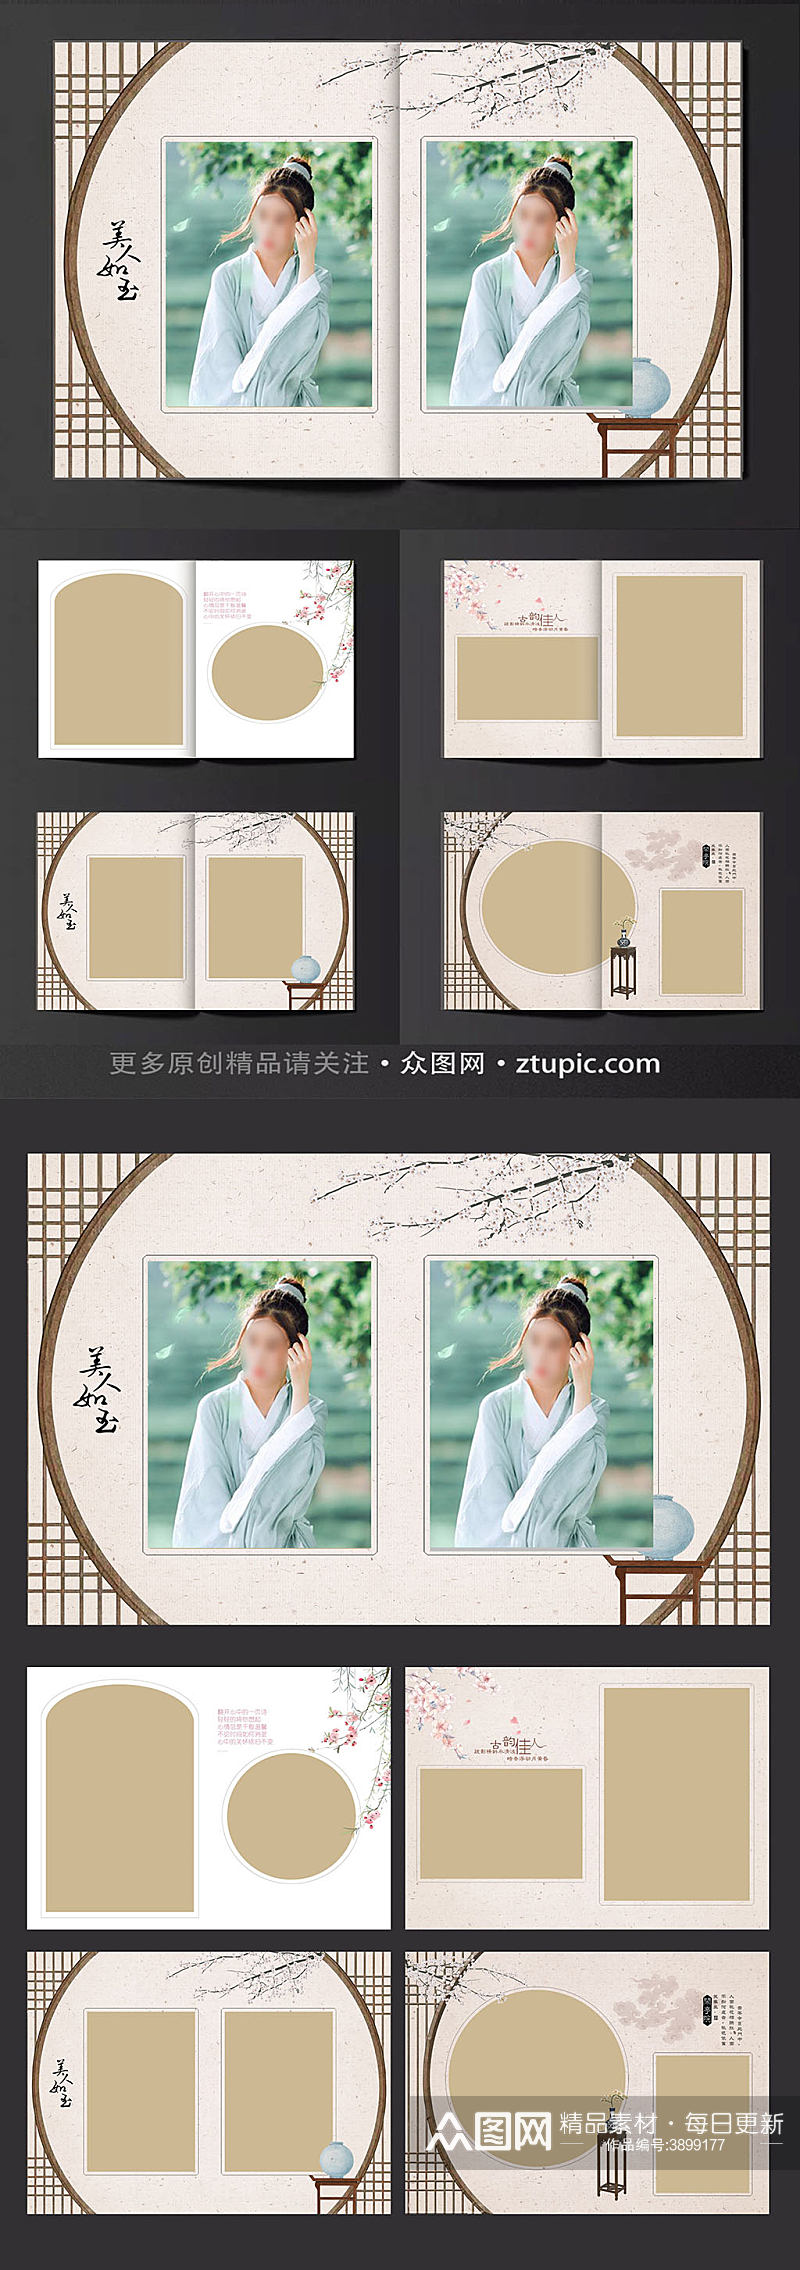 中式高端古典水墨婚纱相册设计模板素材